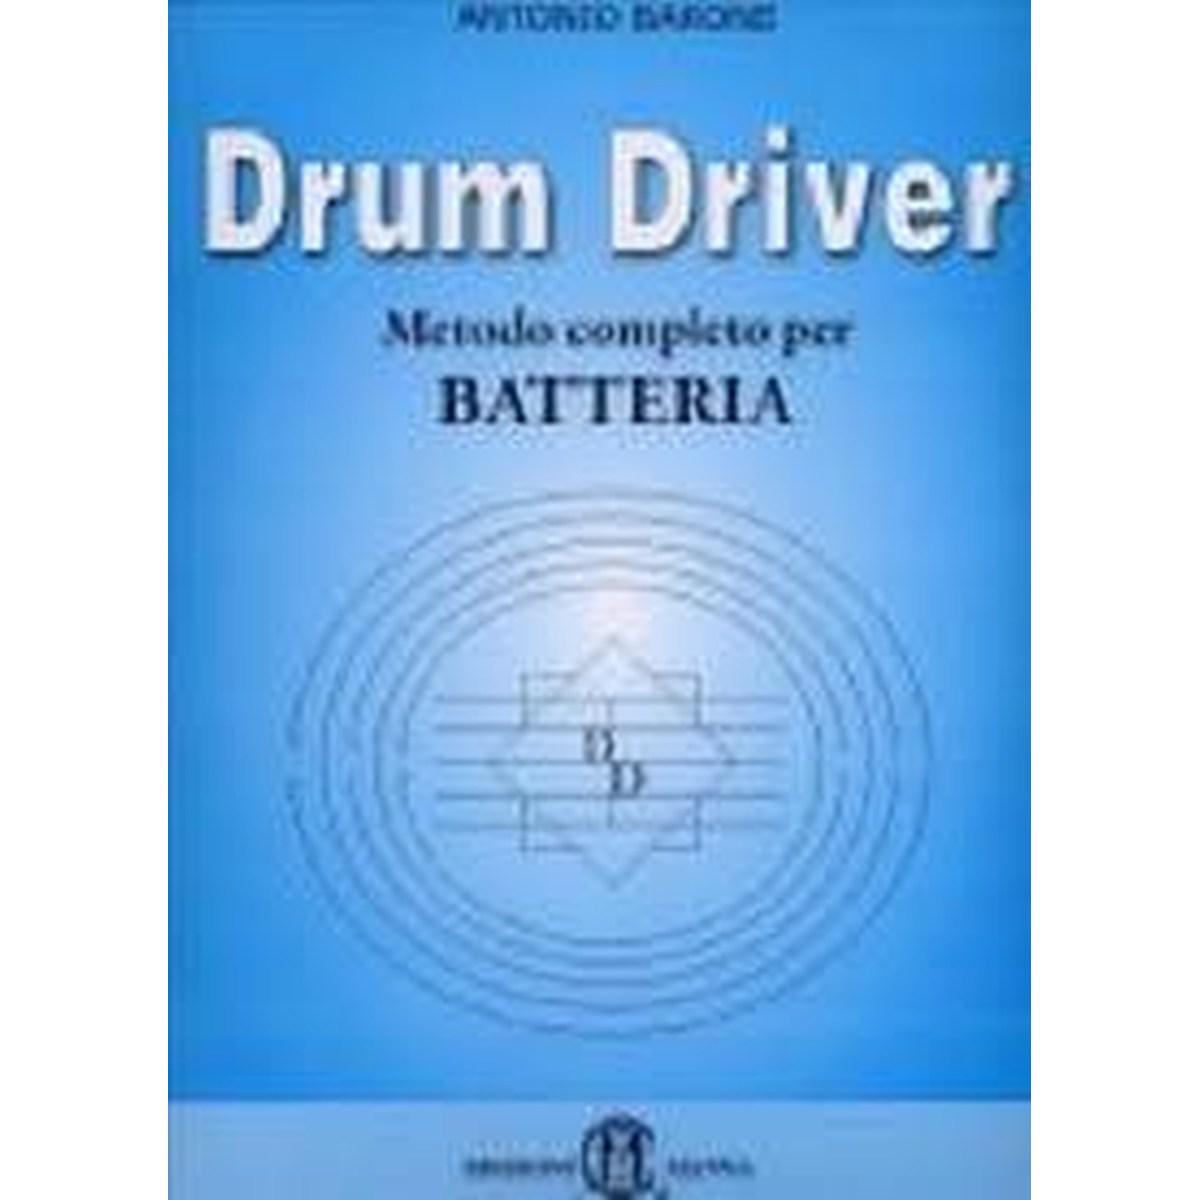 Drum driver. Metodo completo per batteria<br />di Antonio Barone, outlet 40%